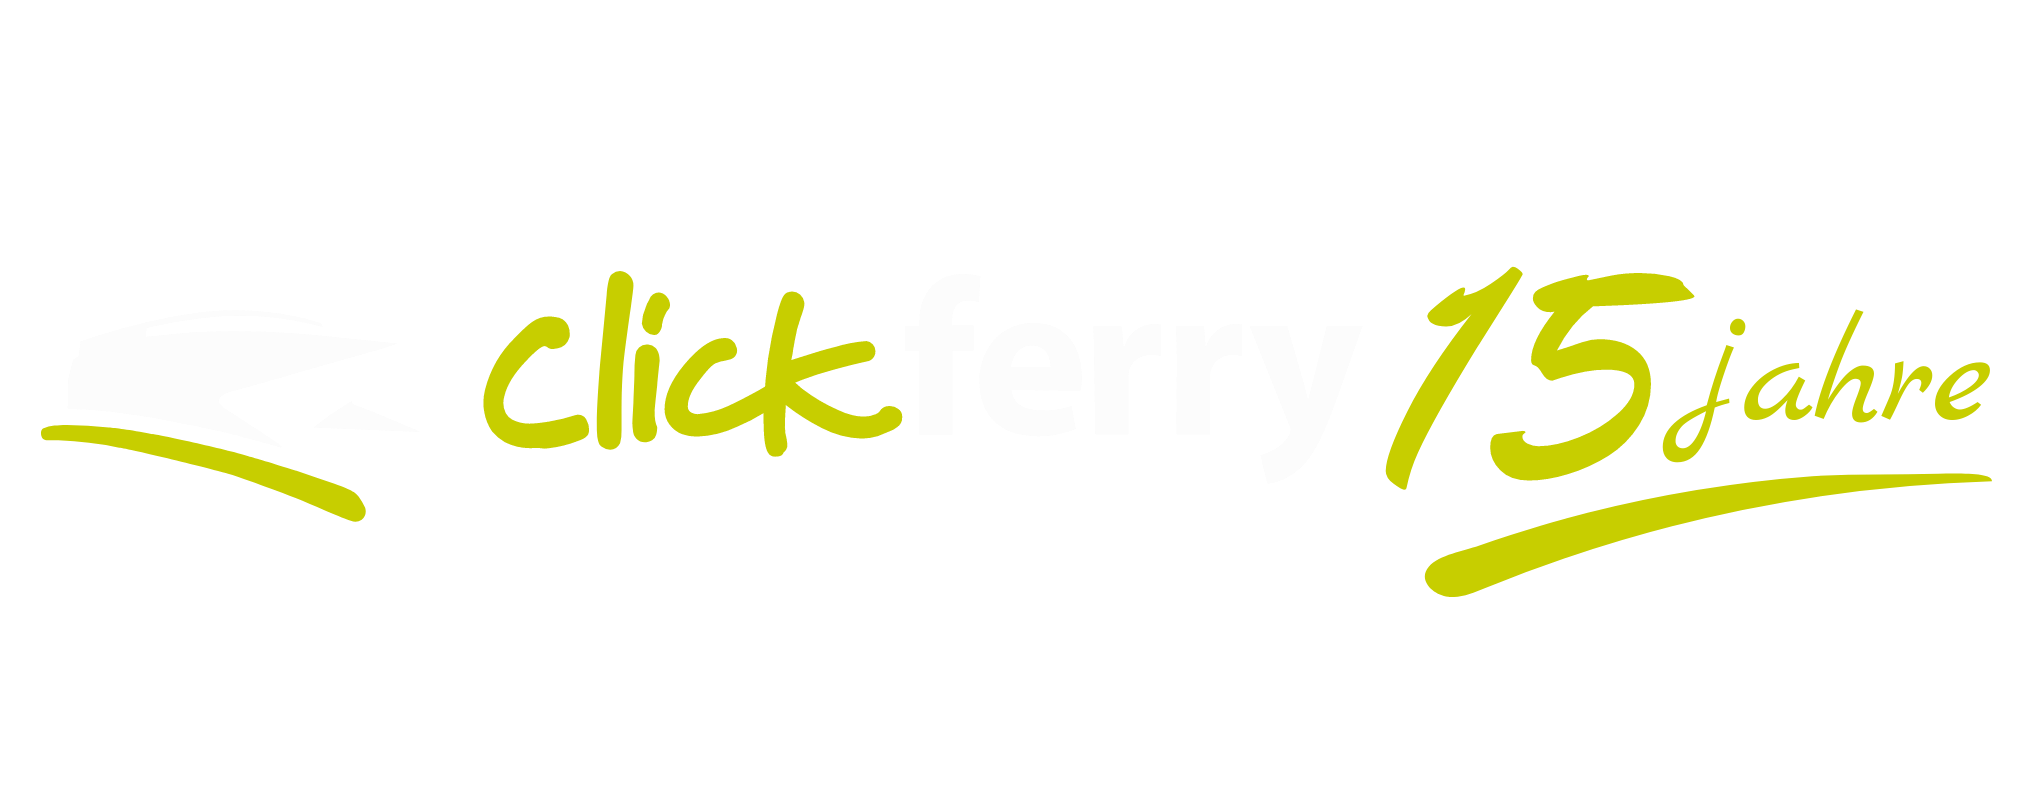 clickferry logo